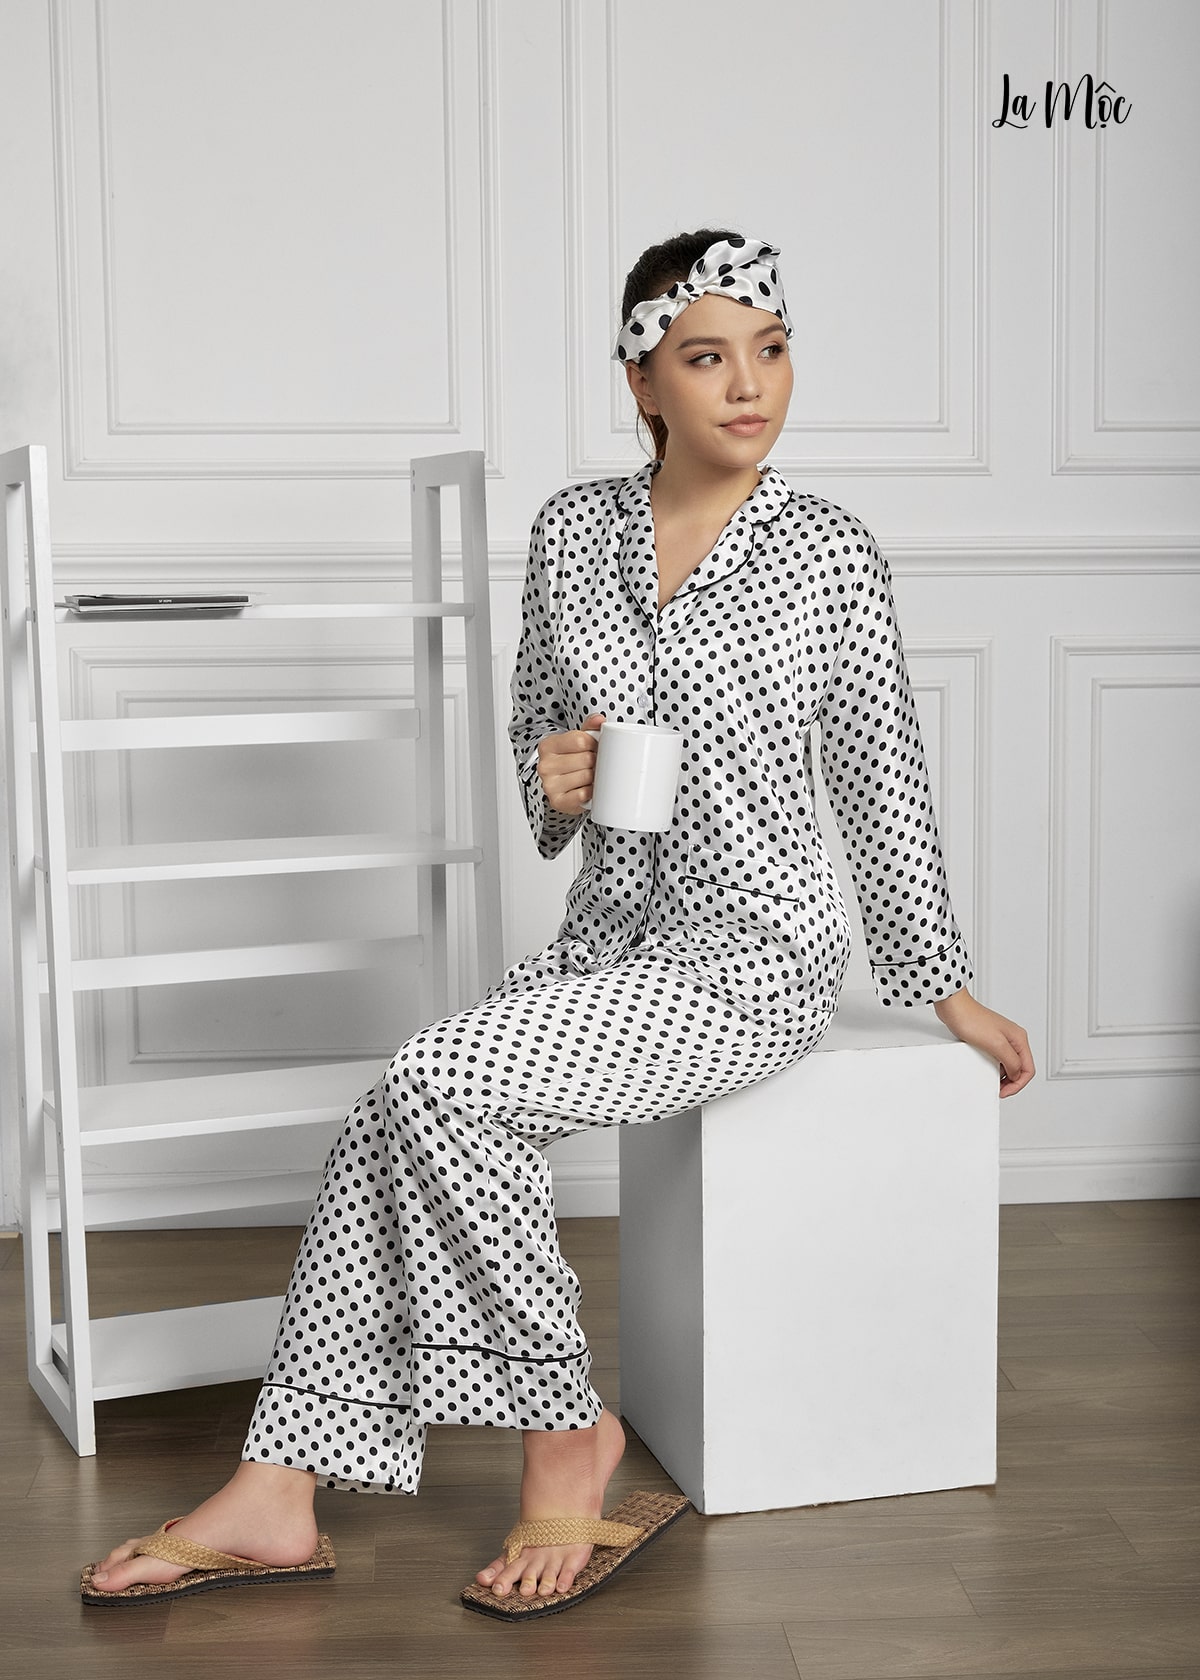 Đồ Bộ Nữ Mặc Nhà Pijama Dài Lụa Hàn Maxivic, La Mộc - MM112115